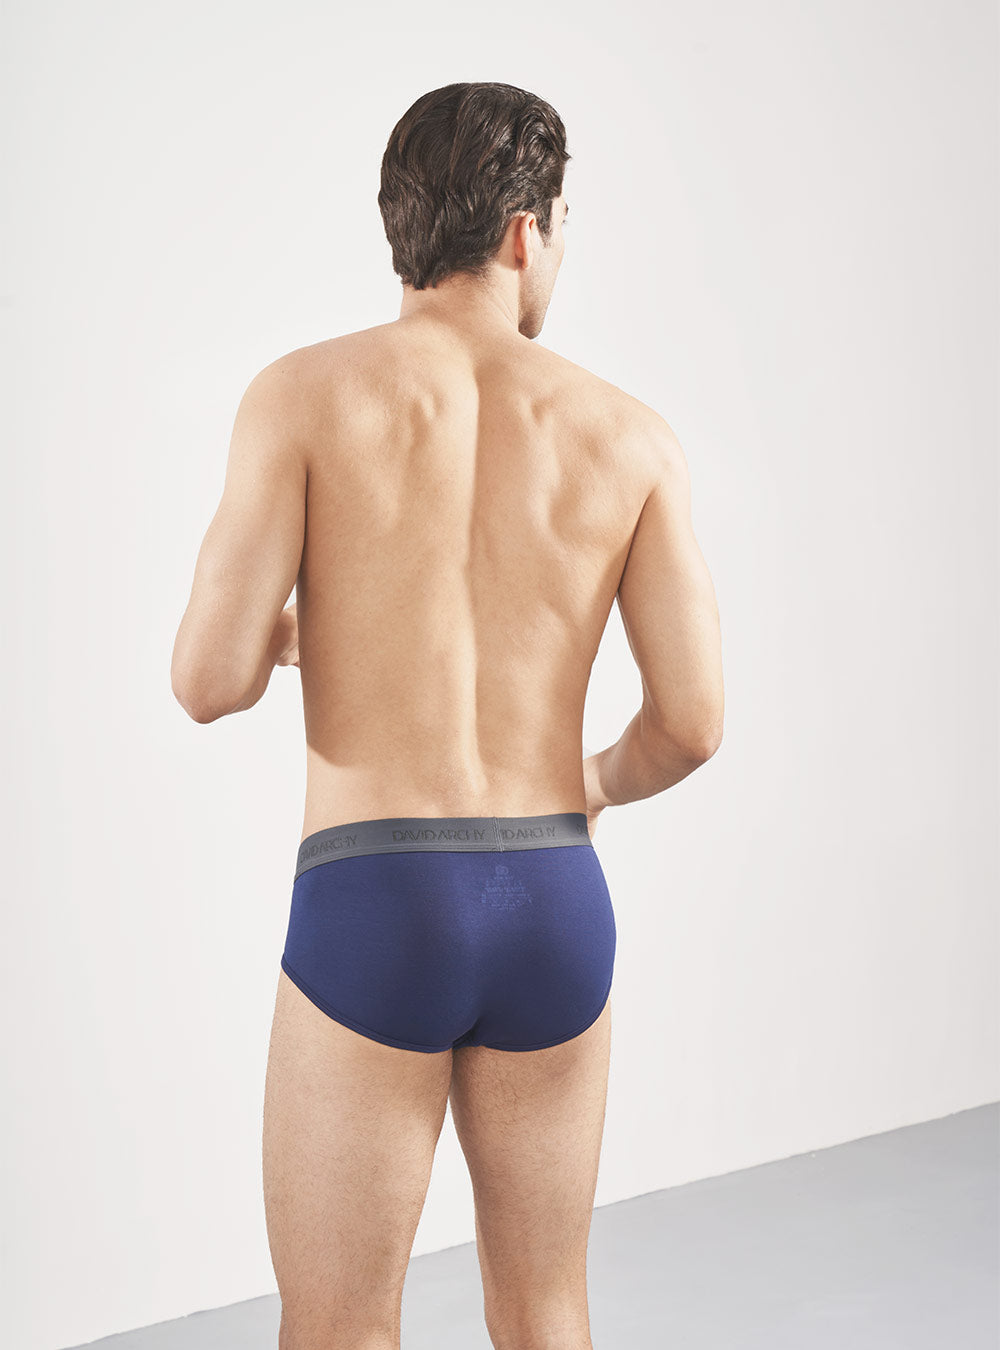 Aayomet Brief For Men Underwear Men's Underwear Bamboo Rayon Breathable  Super Soft Comfort Lightweight Pouch Briefs,Blue XL